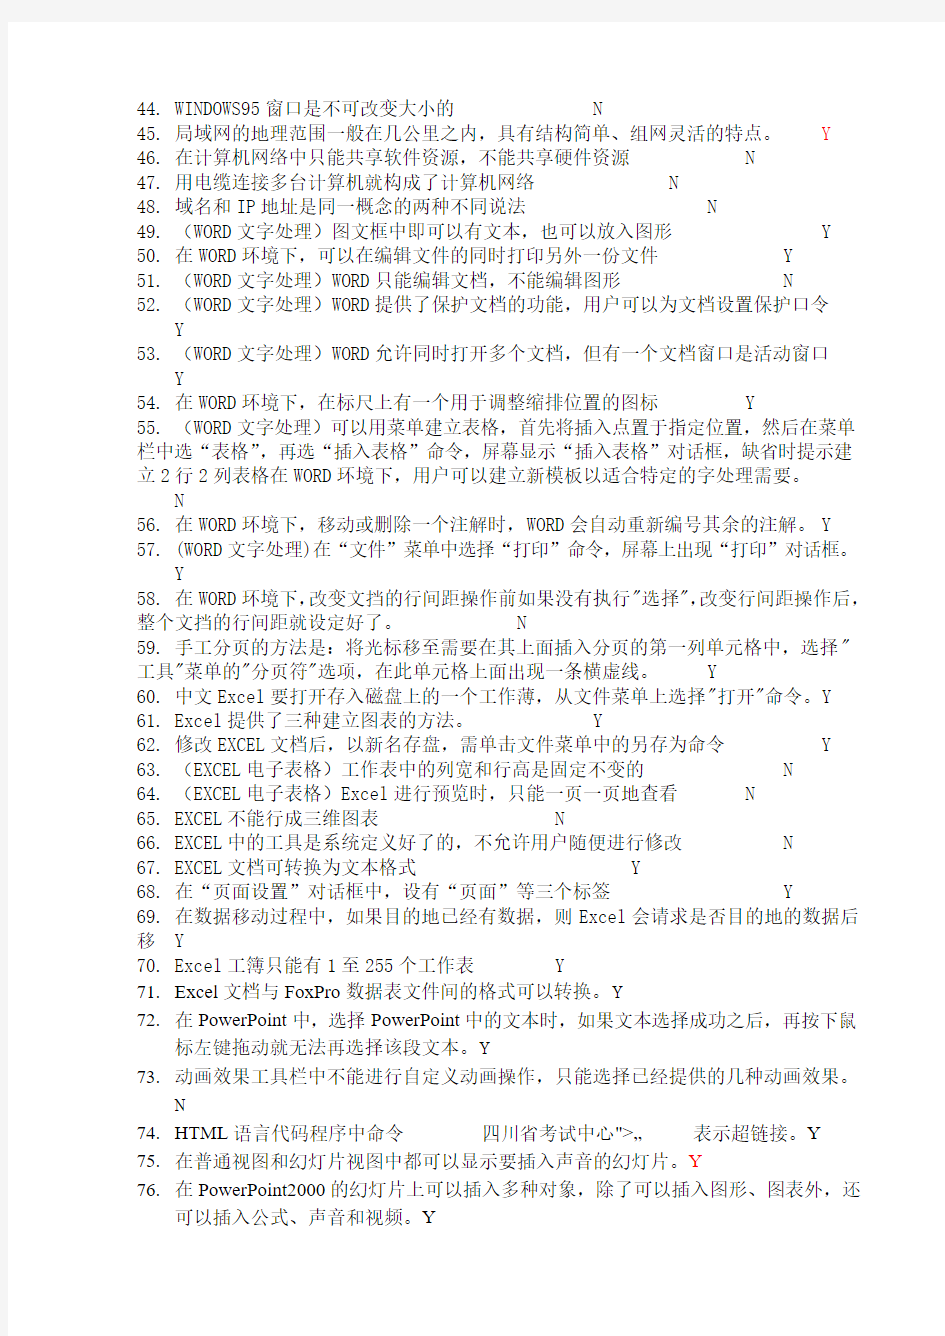 四川高校计算机等级考试笔试复习题(2008-3-29补充)